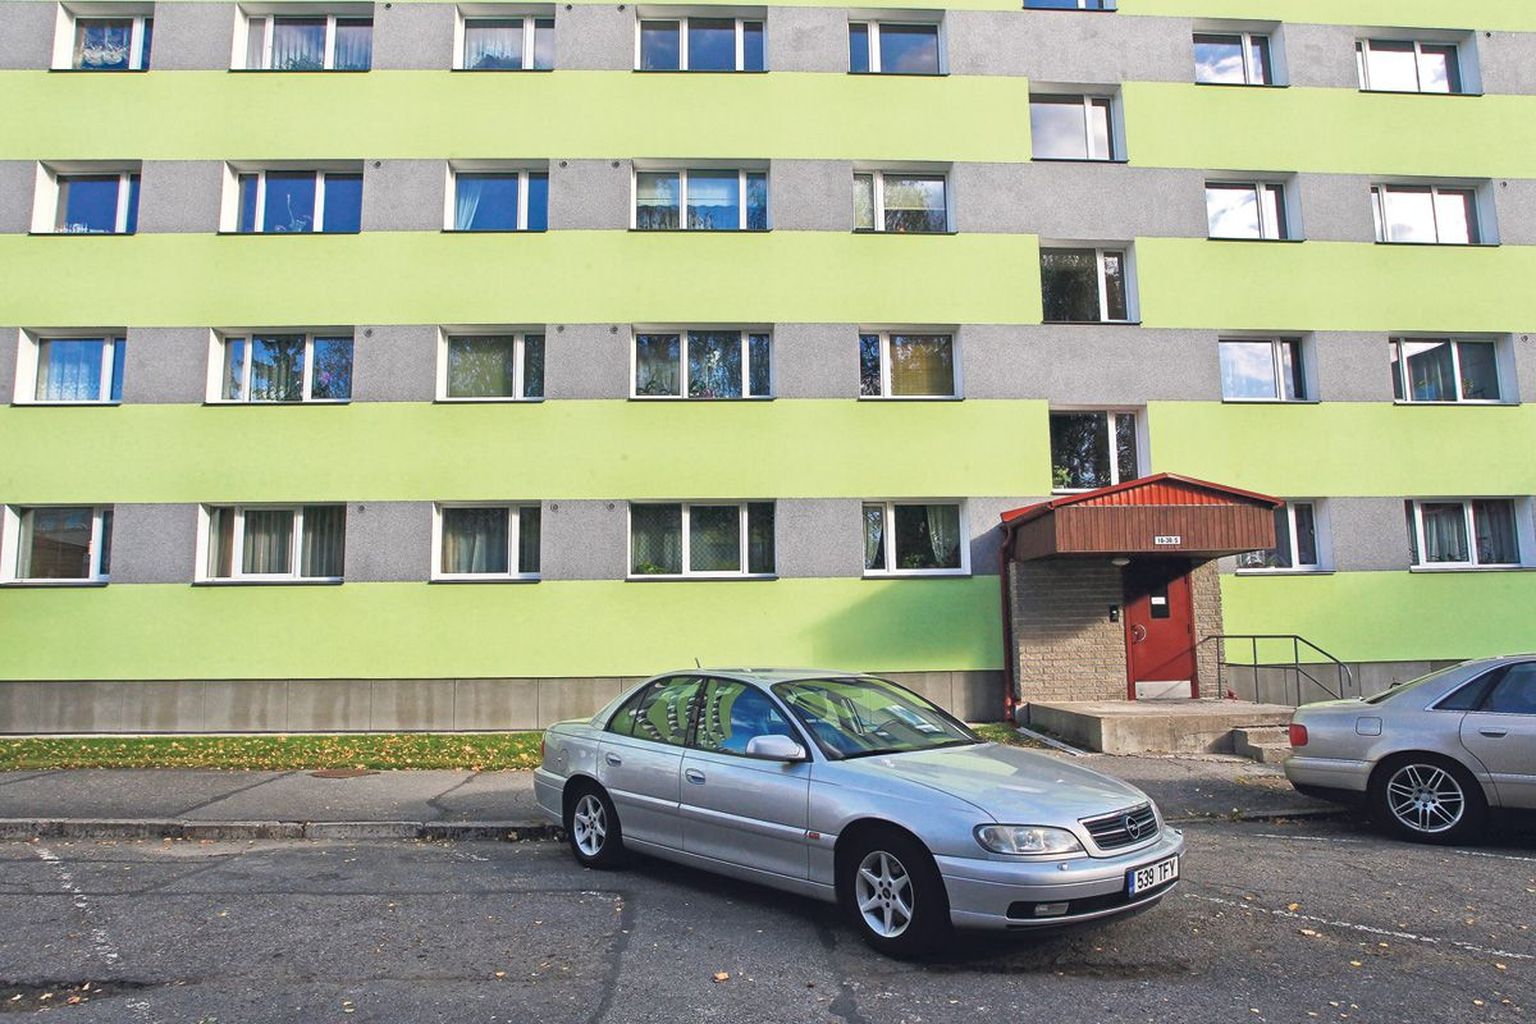 Anne 75 majas läheb 46 000-eurose alghinnaga enam­­pakkumisele Tartu linnale kuuluv kolmetoaline korter.
Kroonuaia 15 majas läheb 23 000-eurose alghinnaga enampakkumisele Tartu linnale kuuluv ahiküttega kahetoaline korter.